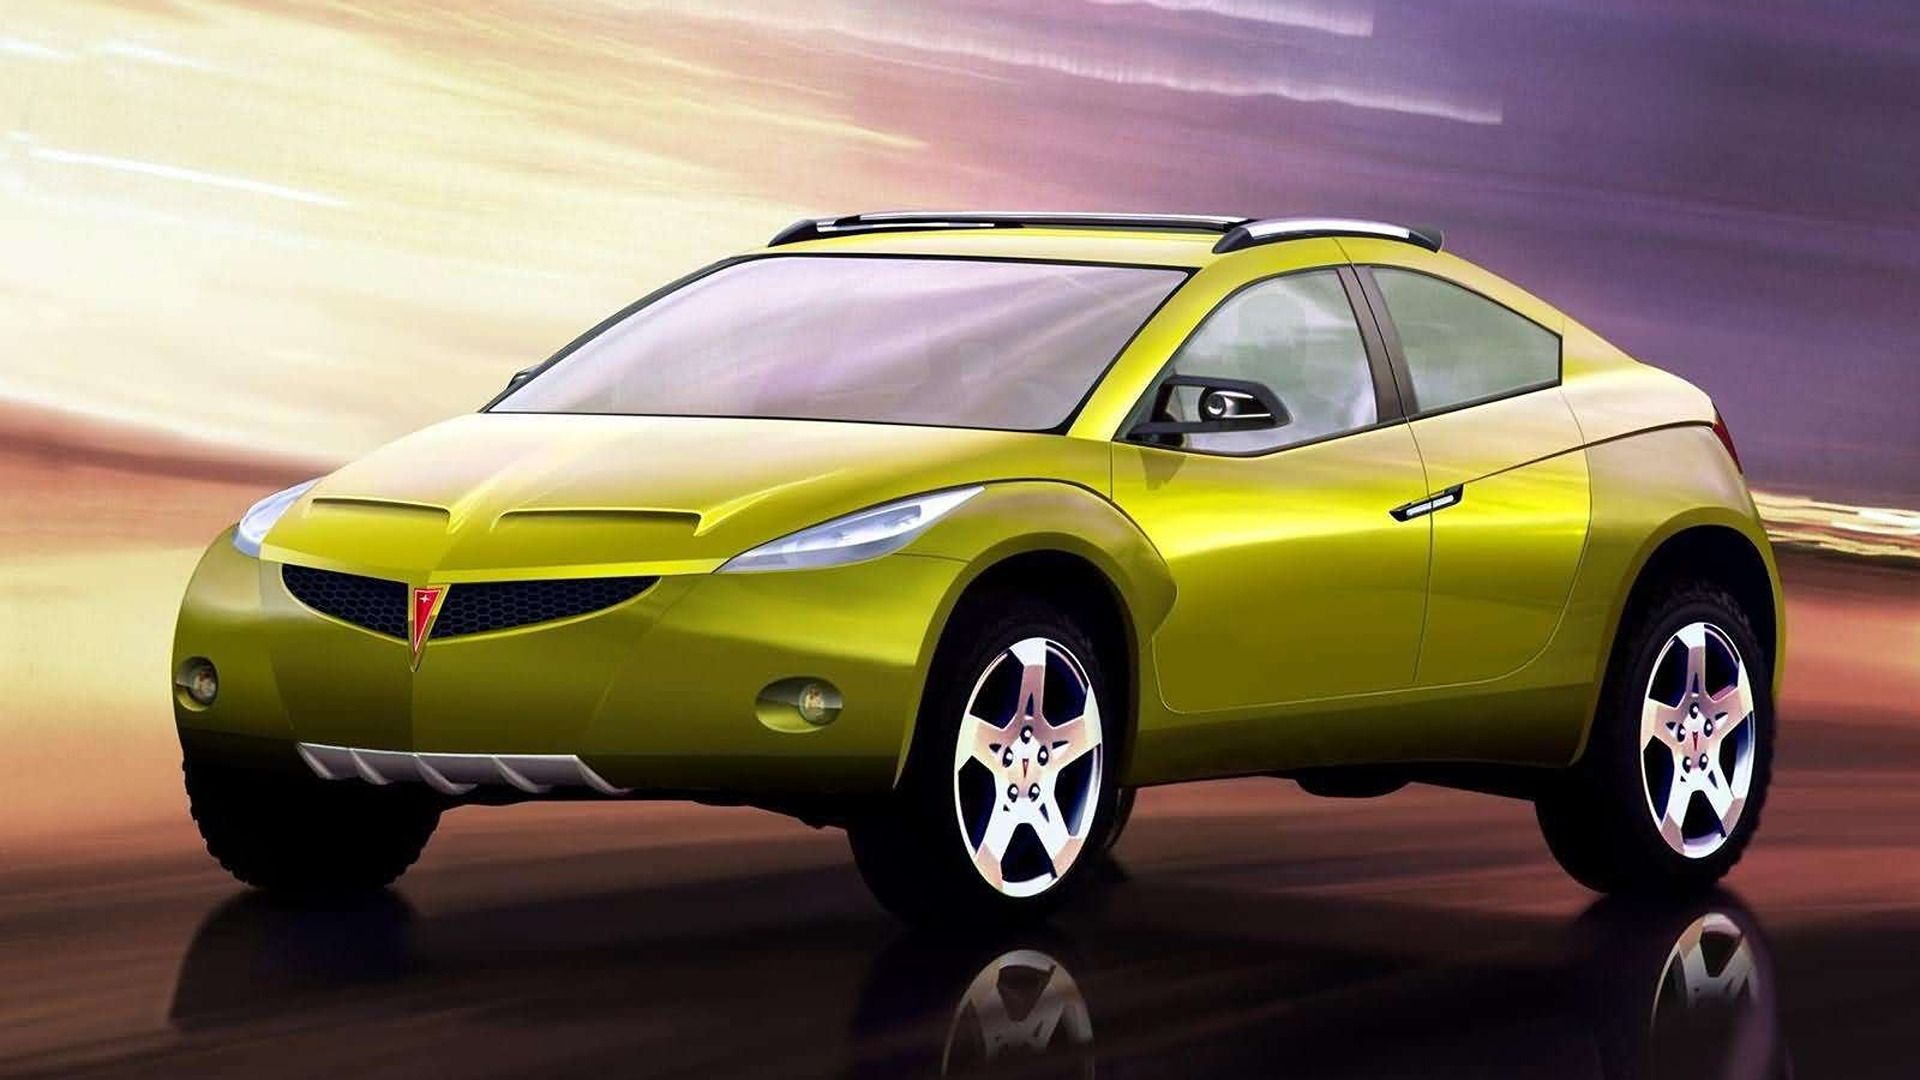 Pontiac-REV_Concept-2002-1600-02